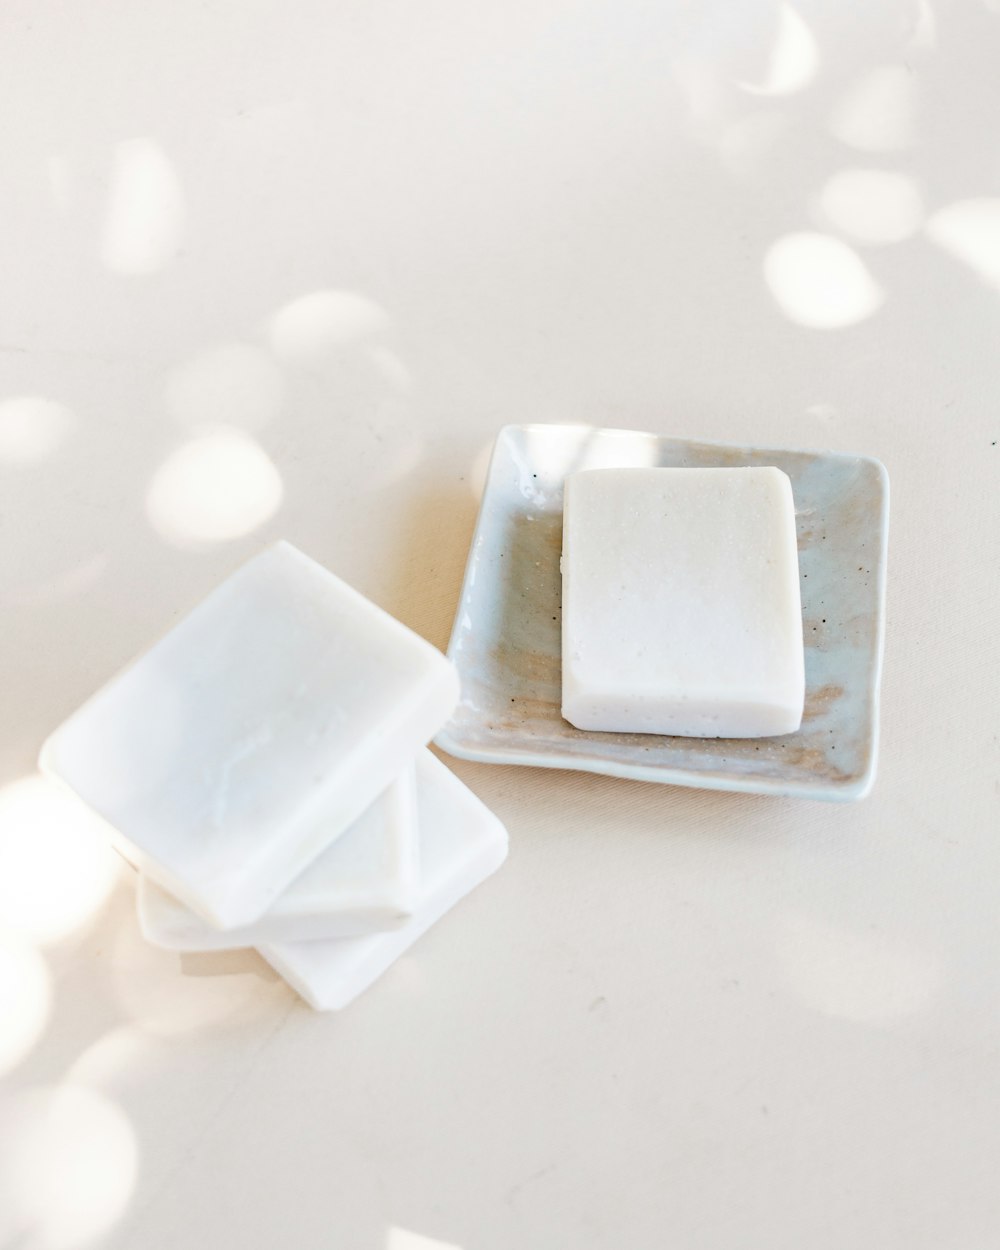 plateau à oeufs en plastique blanc sur table blanche